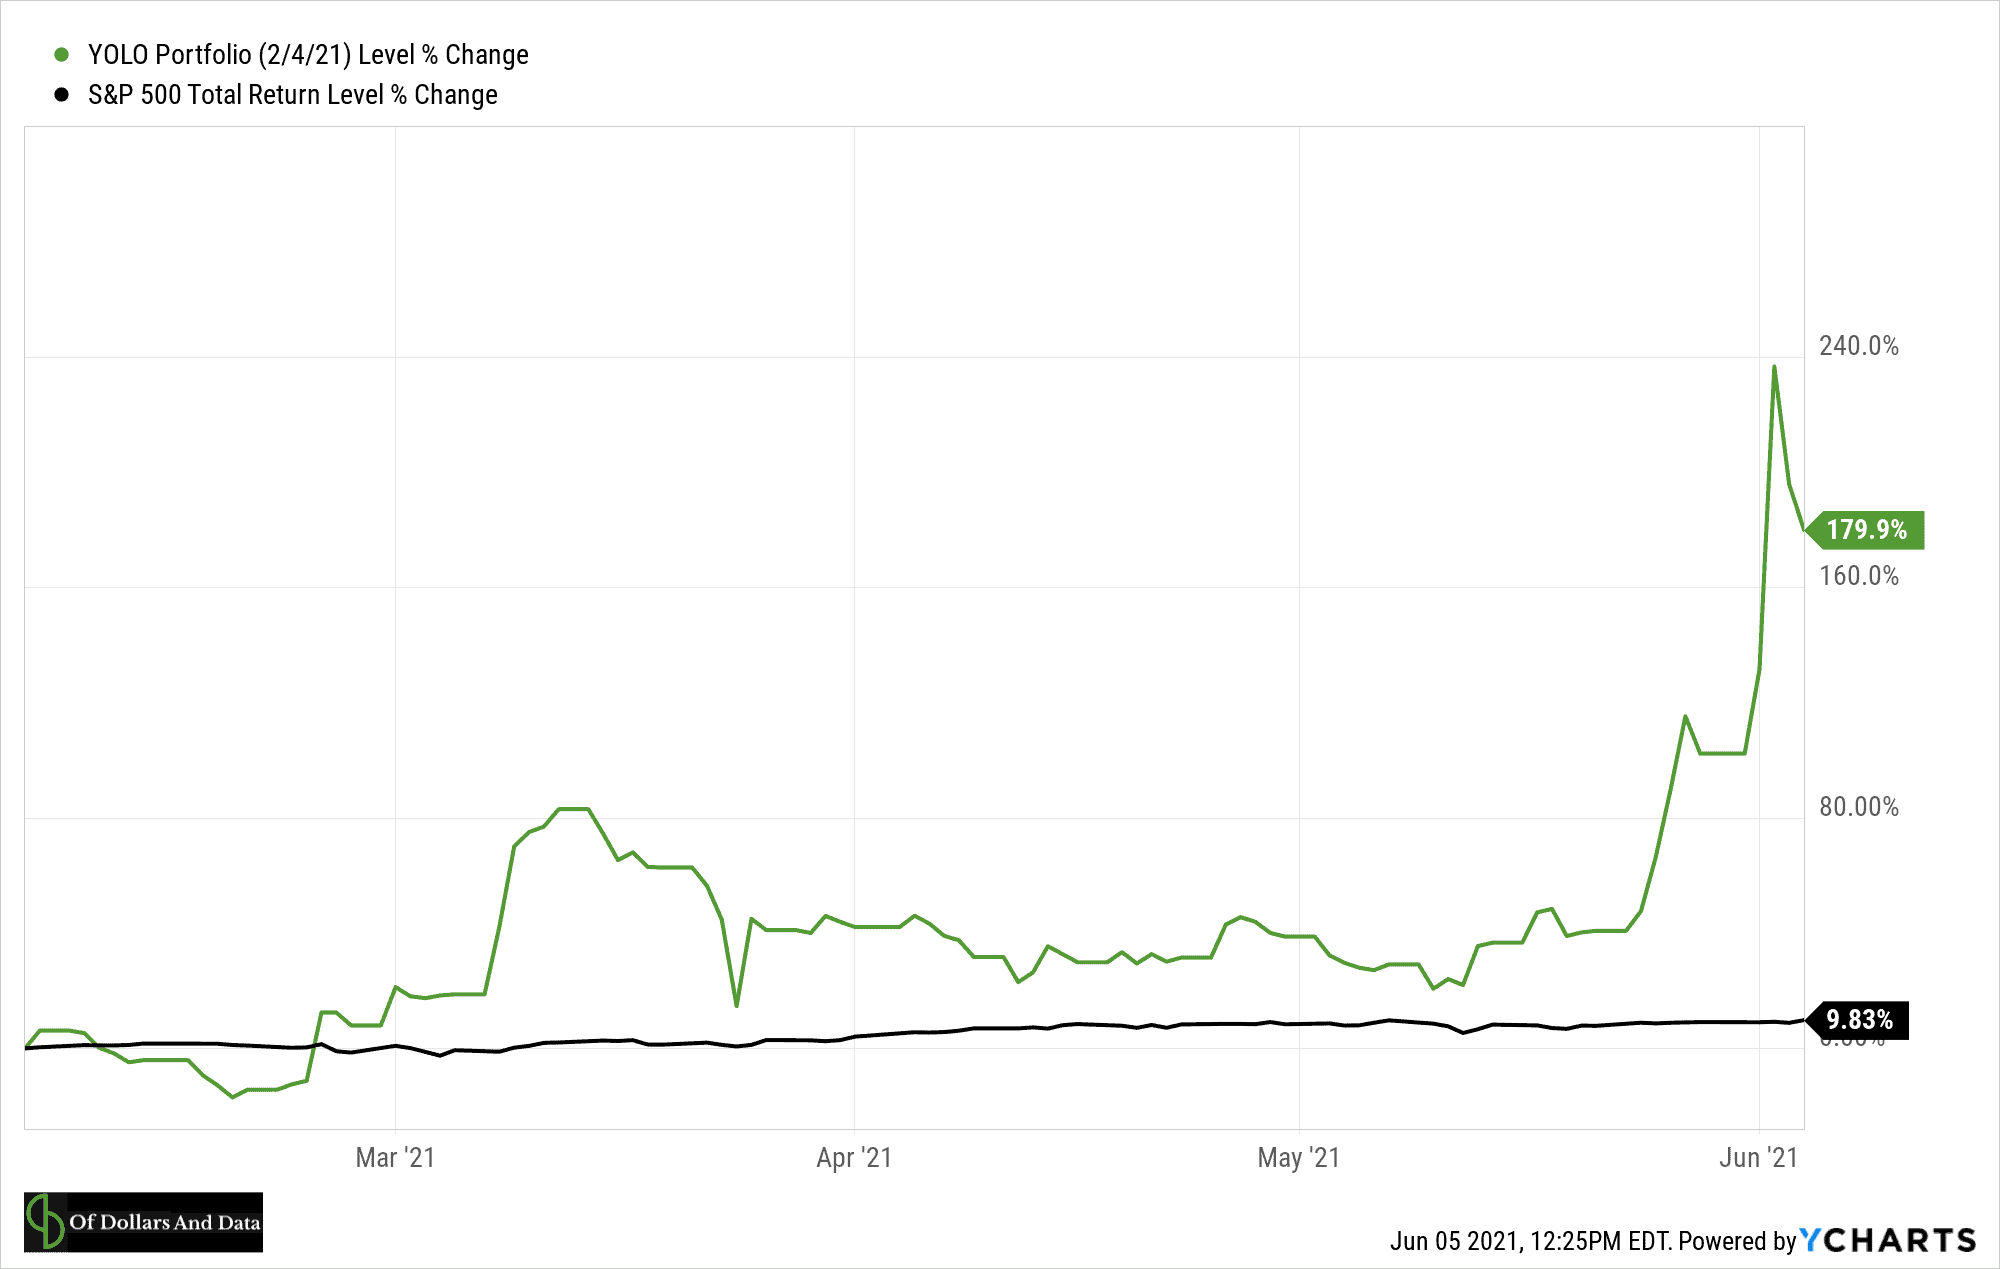 YOLO portfolio vs S&P 500 in 2021.